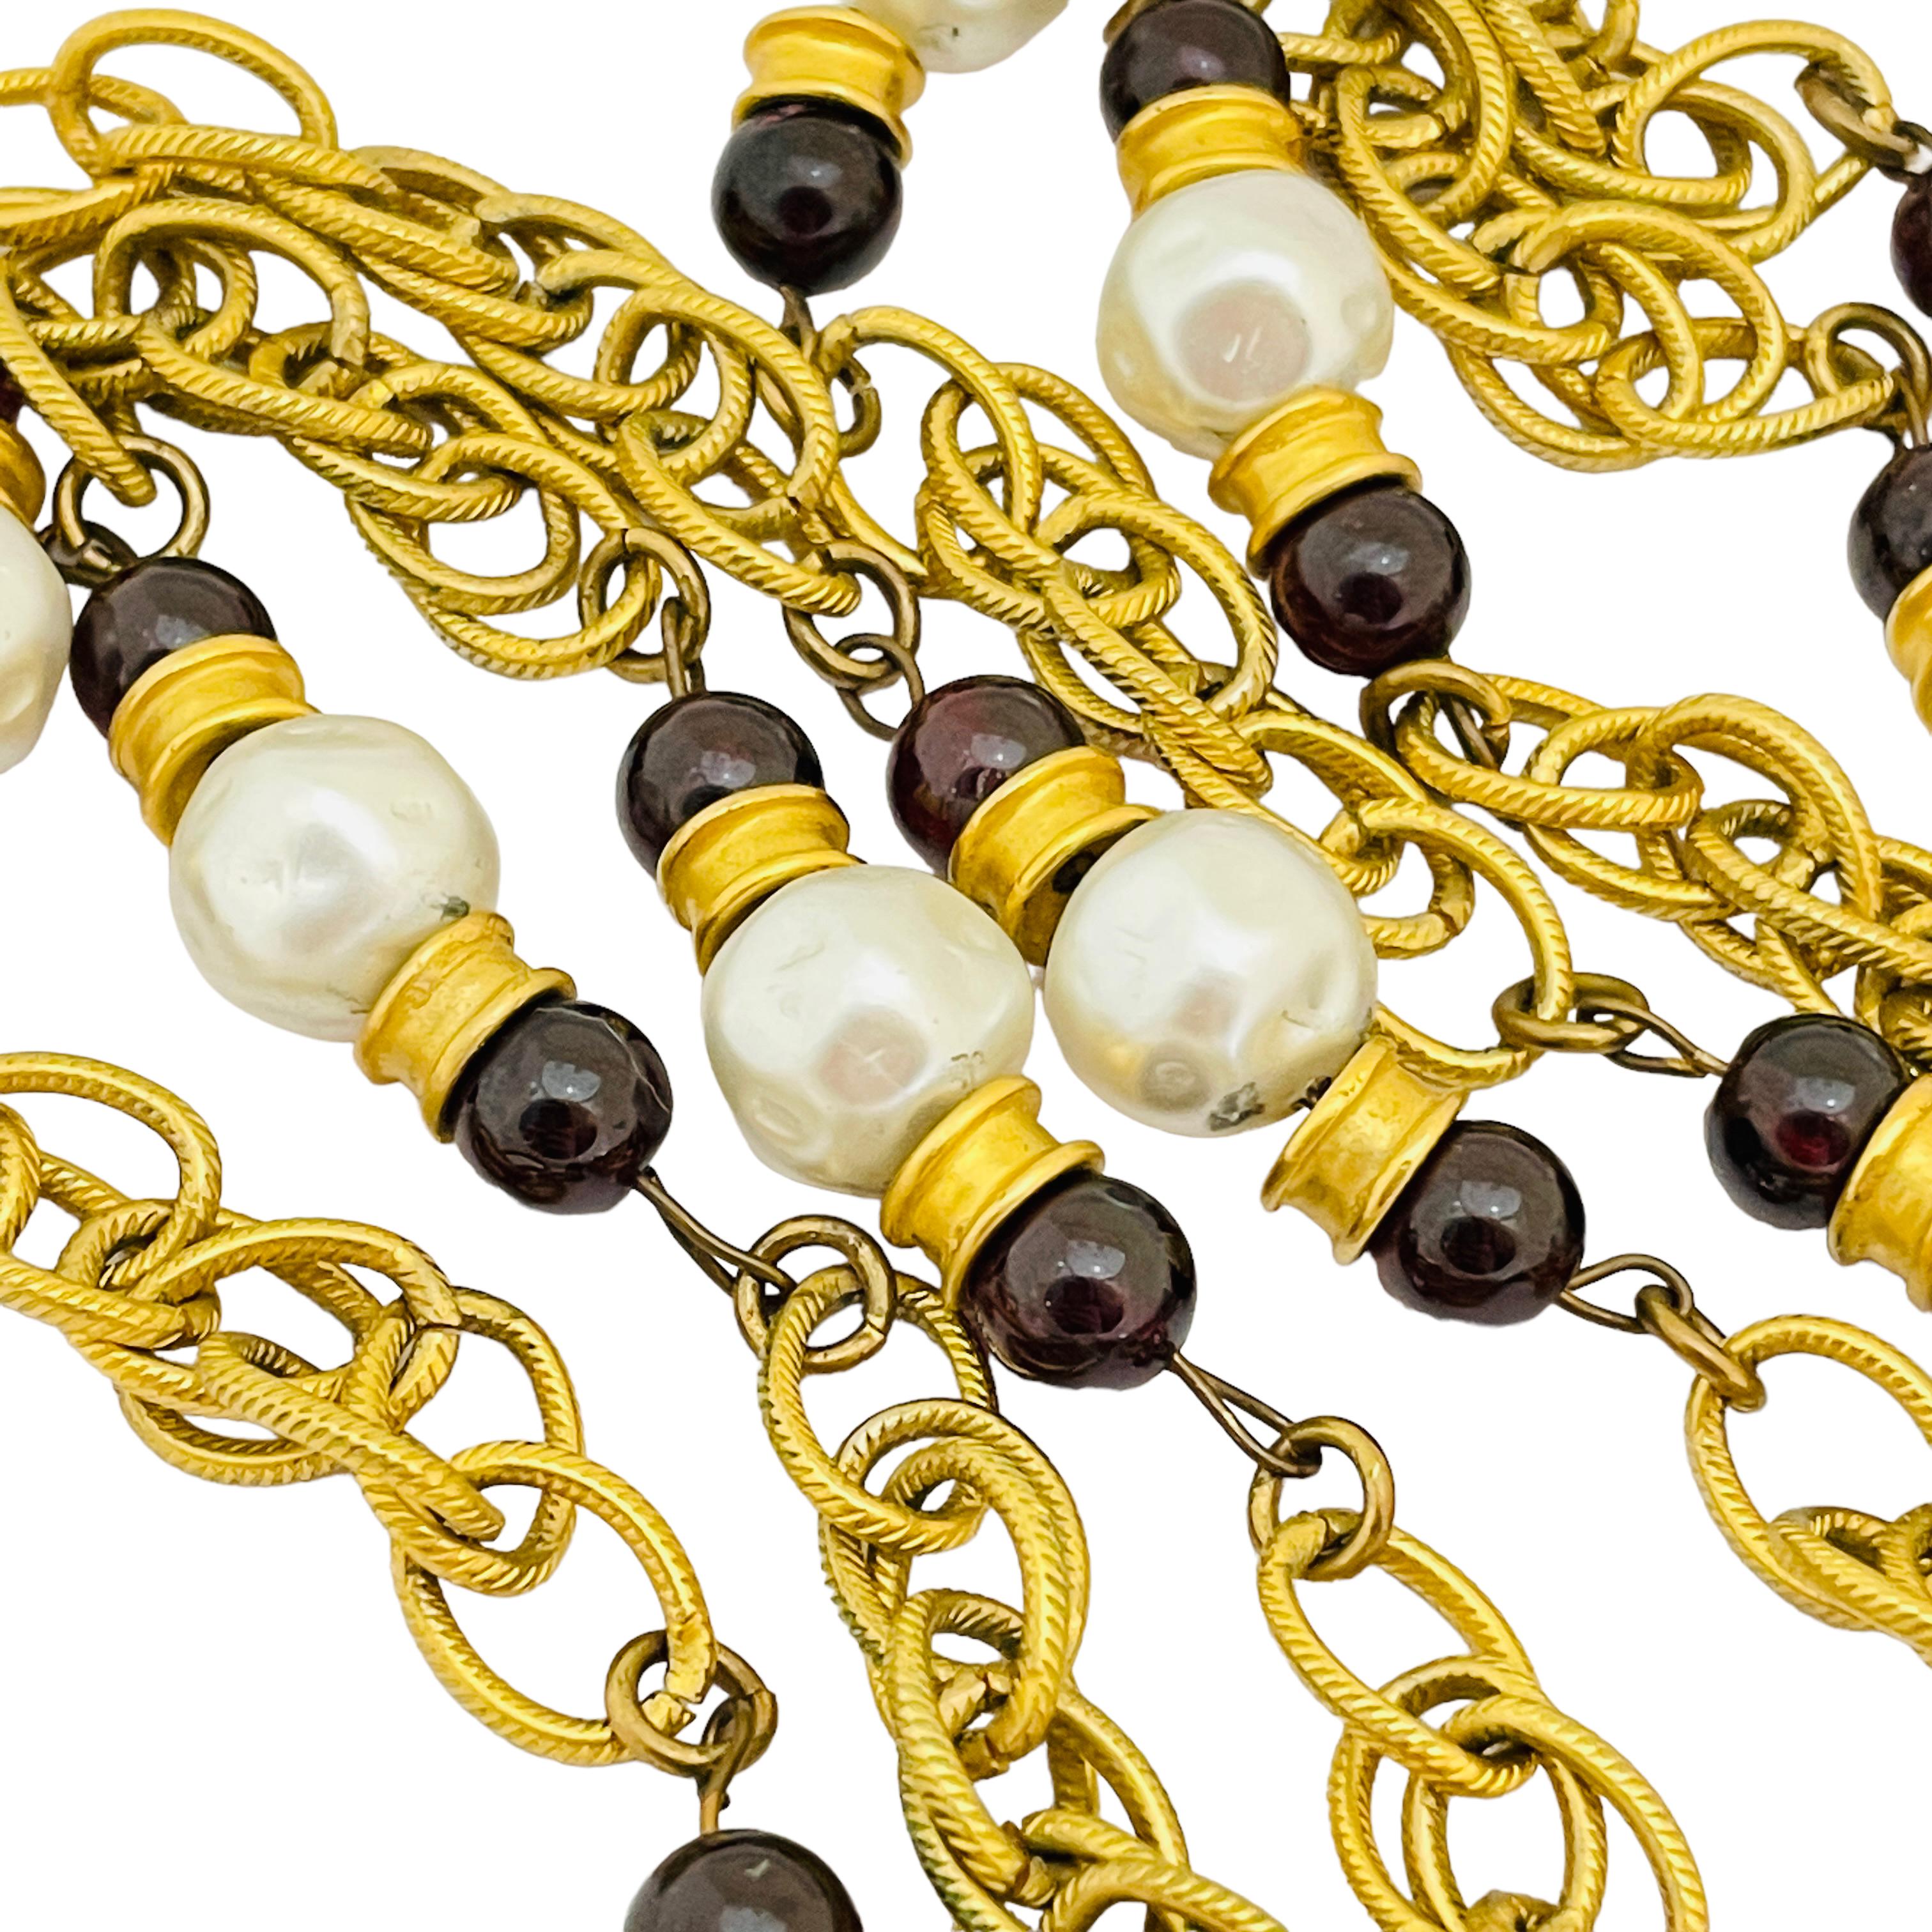 DÉTAILS

• non signé 

• ton or avec perles de verre

• collier de défilé de designer vintage  

MESURES  

• 52